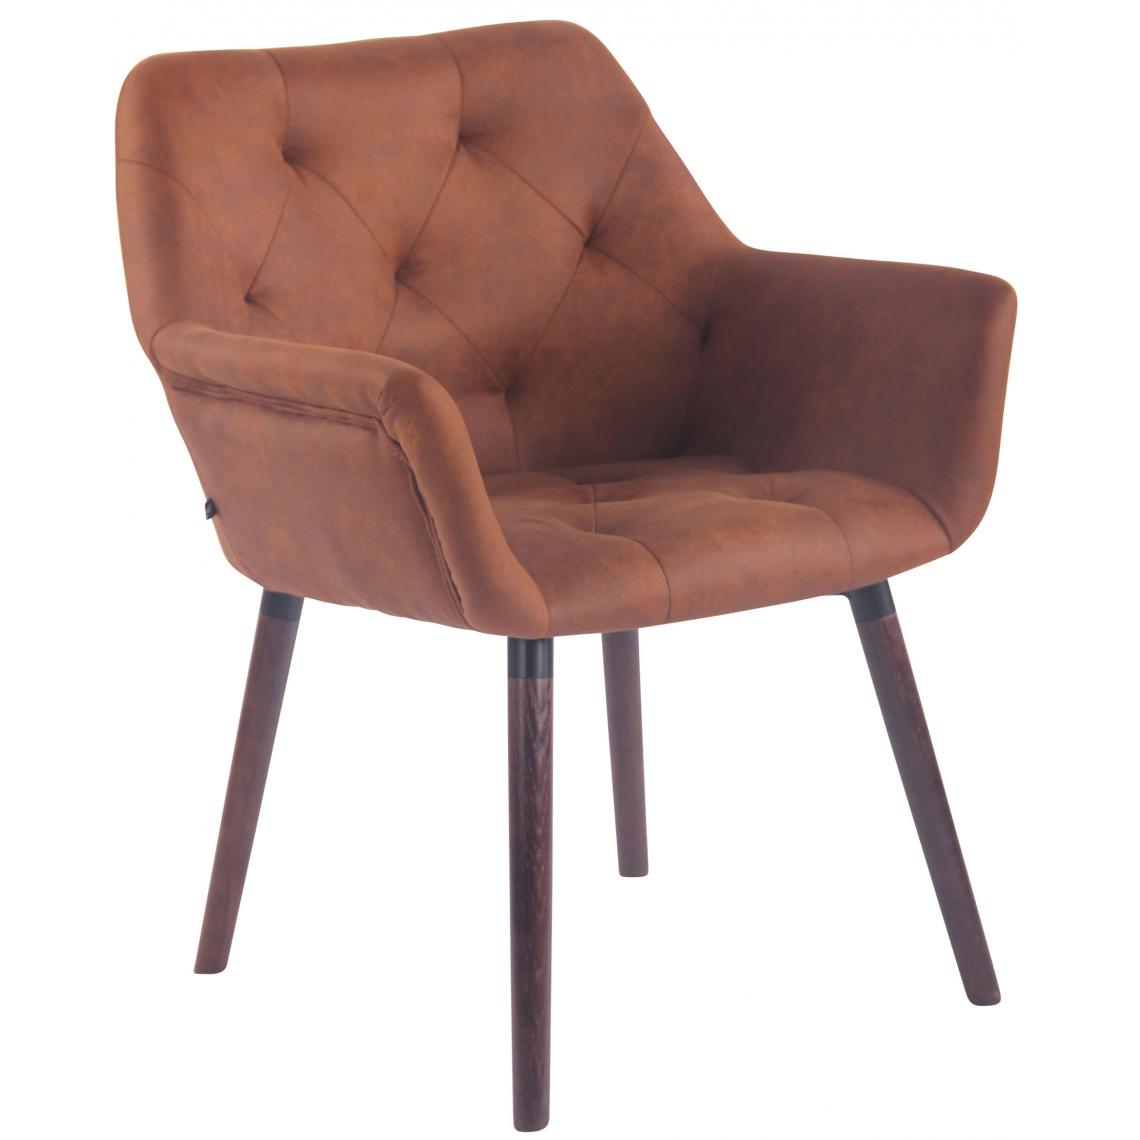 Icaverne - Admirable Chaise de salle à manger reference Khartoum Vintage simili cuir noyer (chêne) couleur marron - Chaises